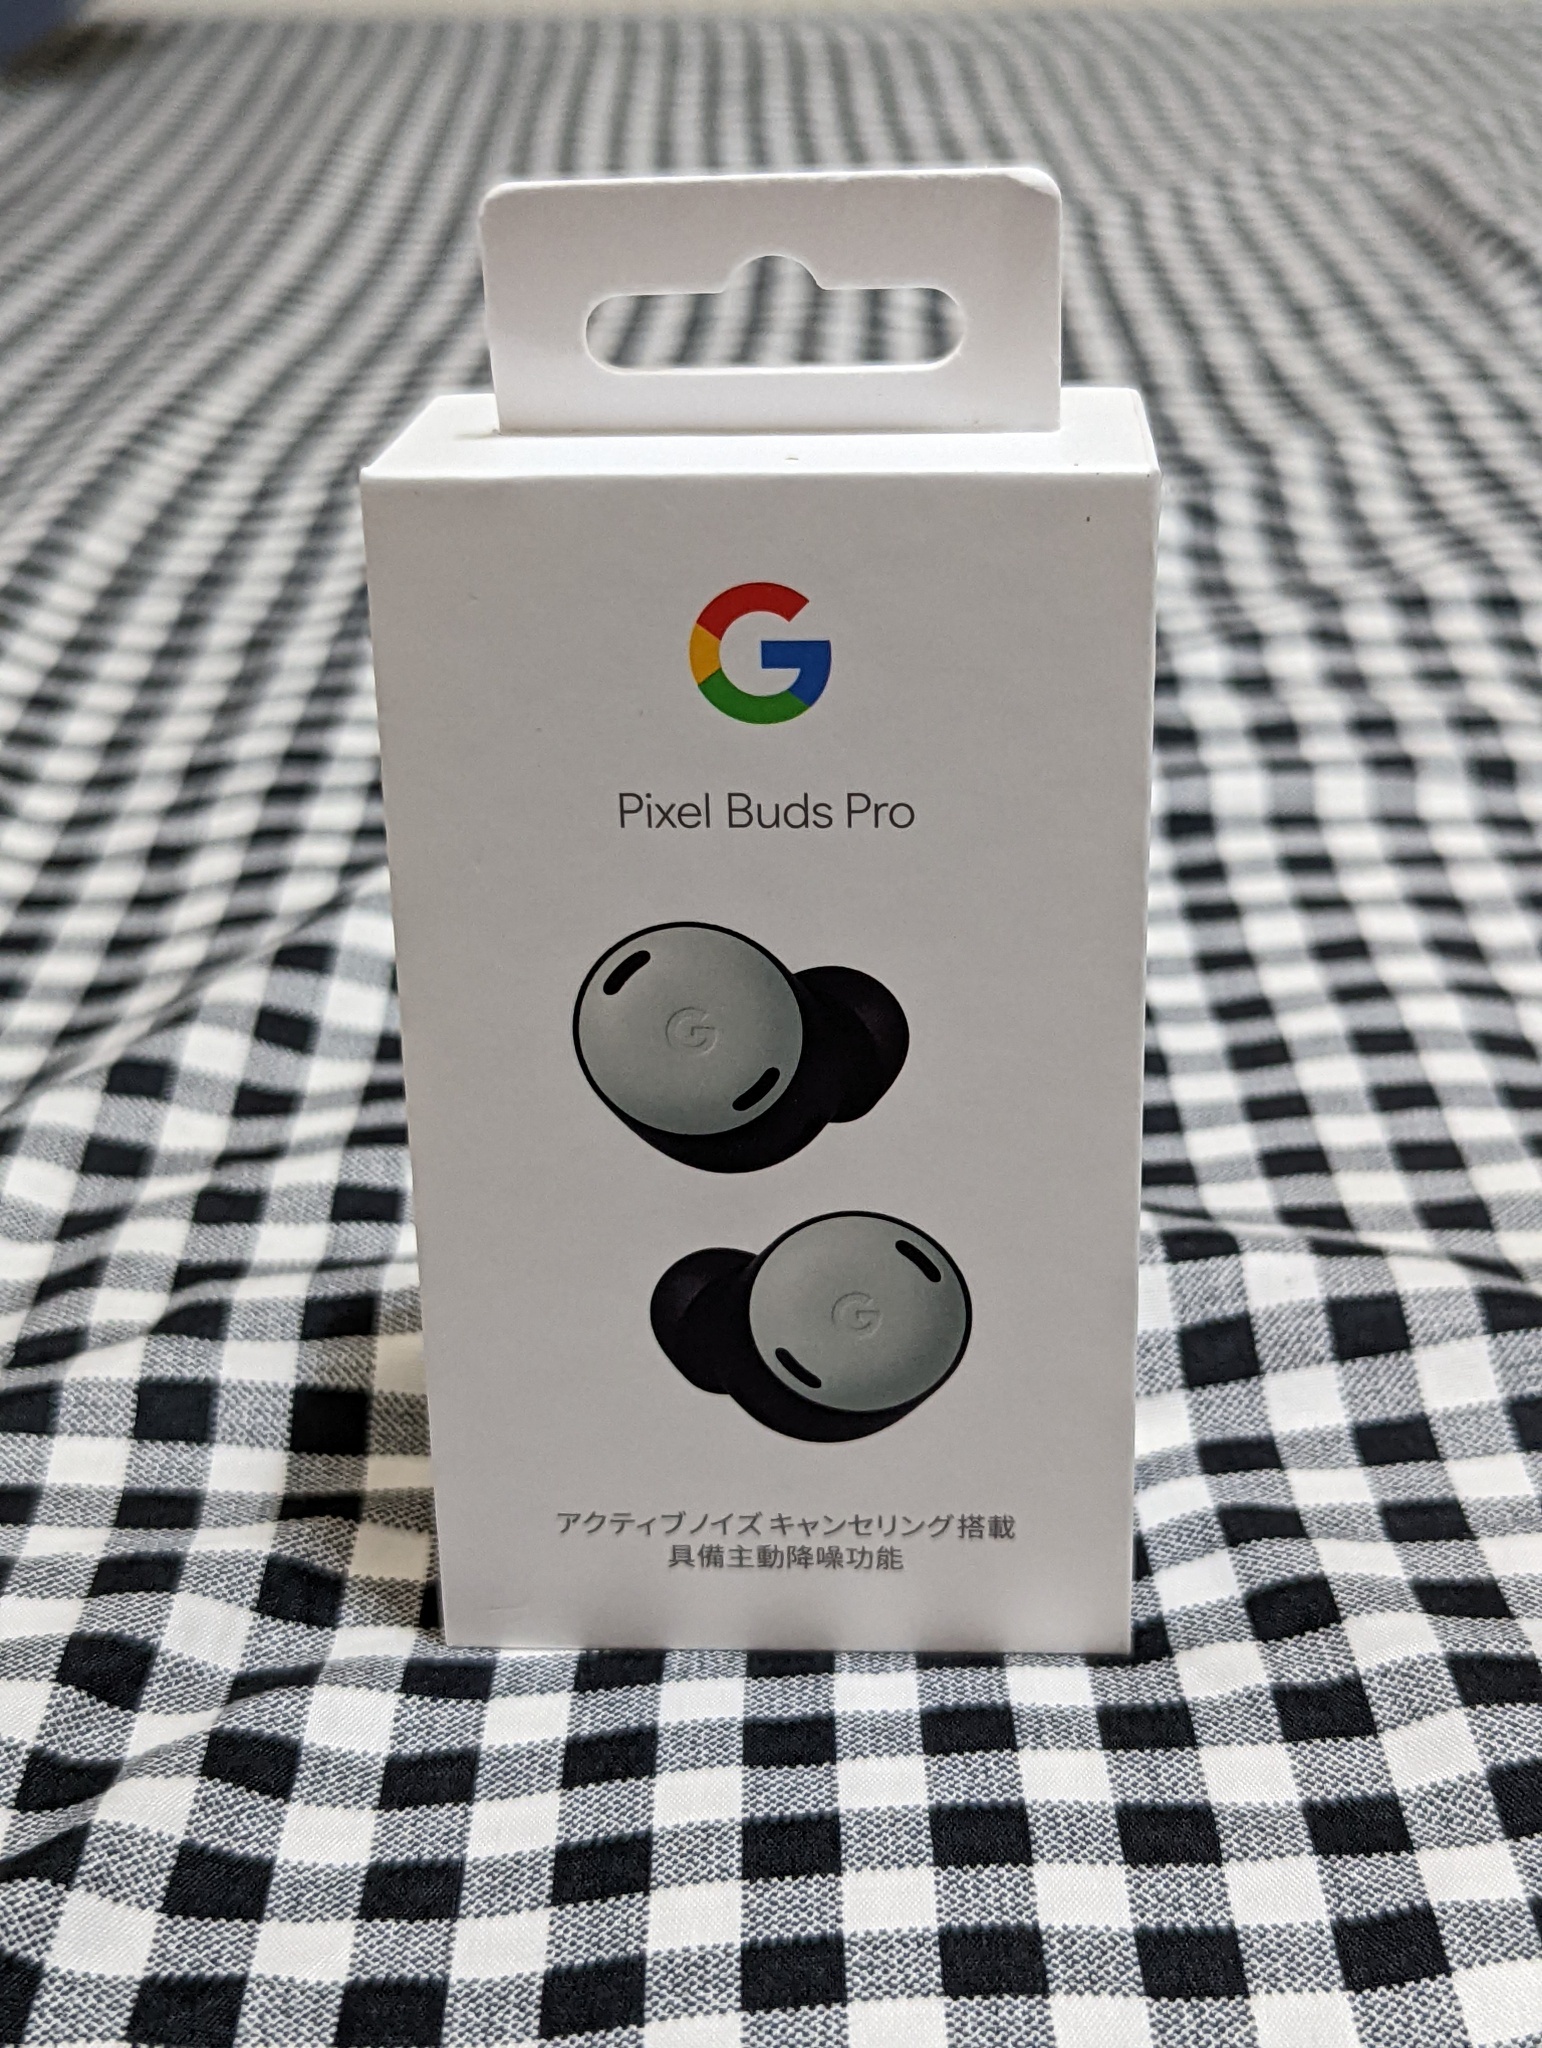 [心得] Google Pixel Buds Pro 一點心得